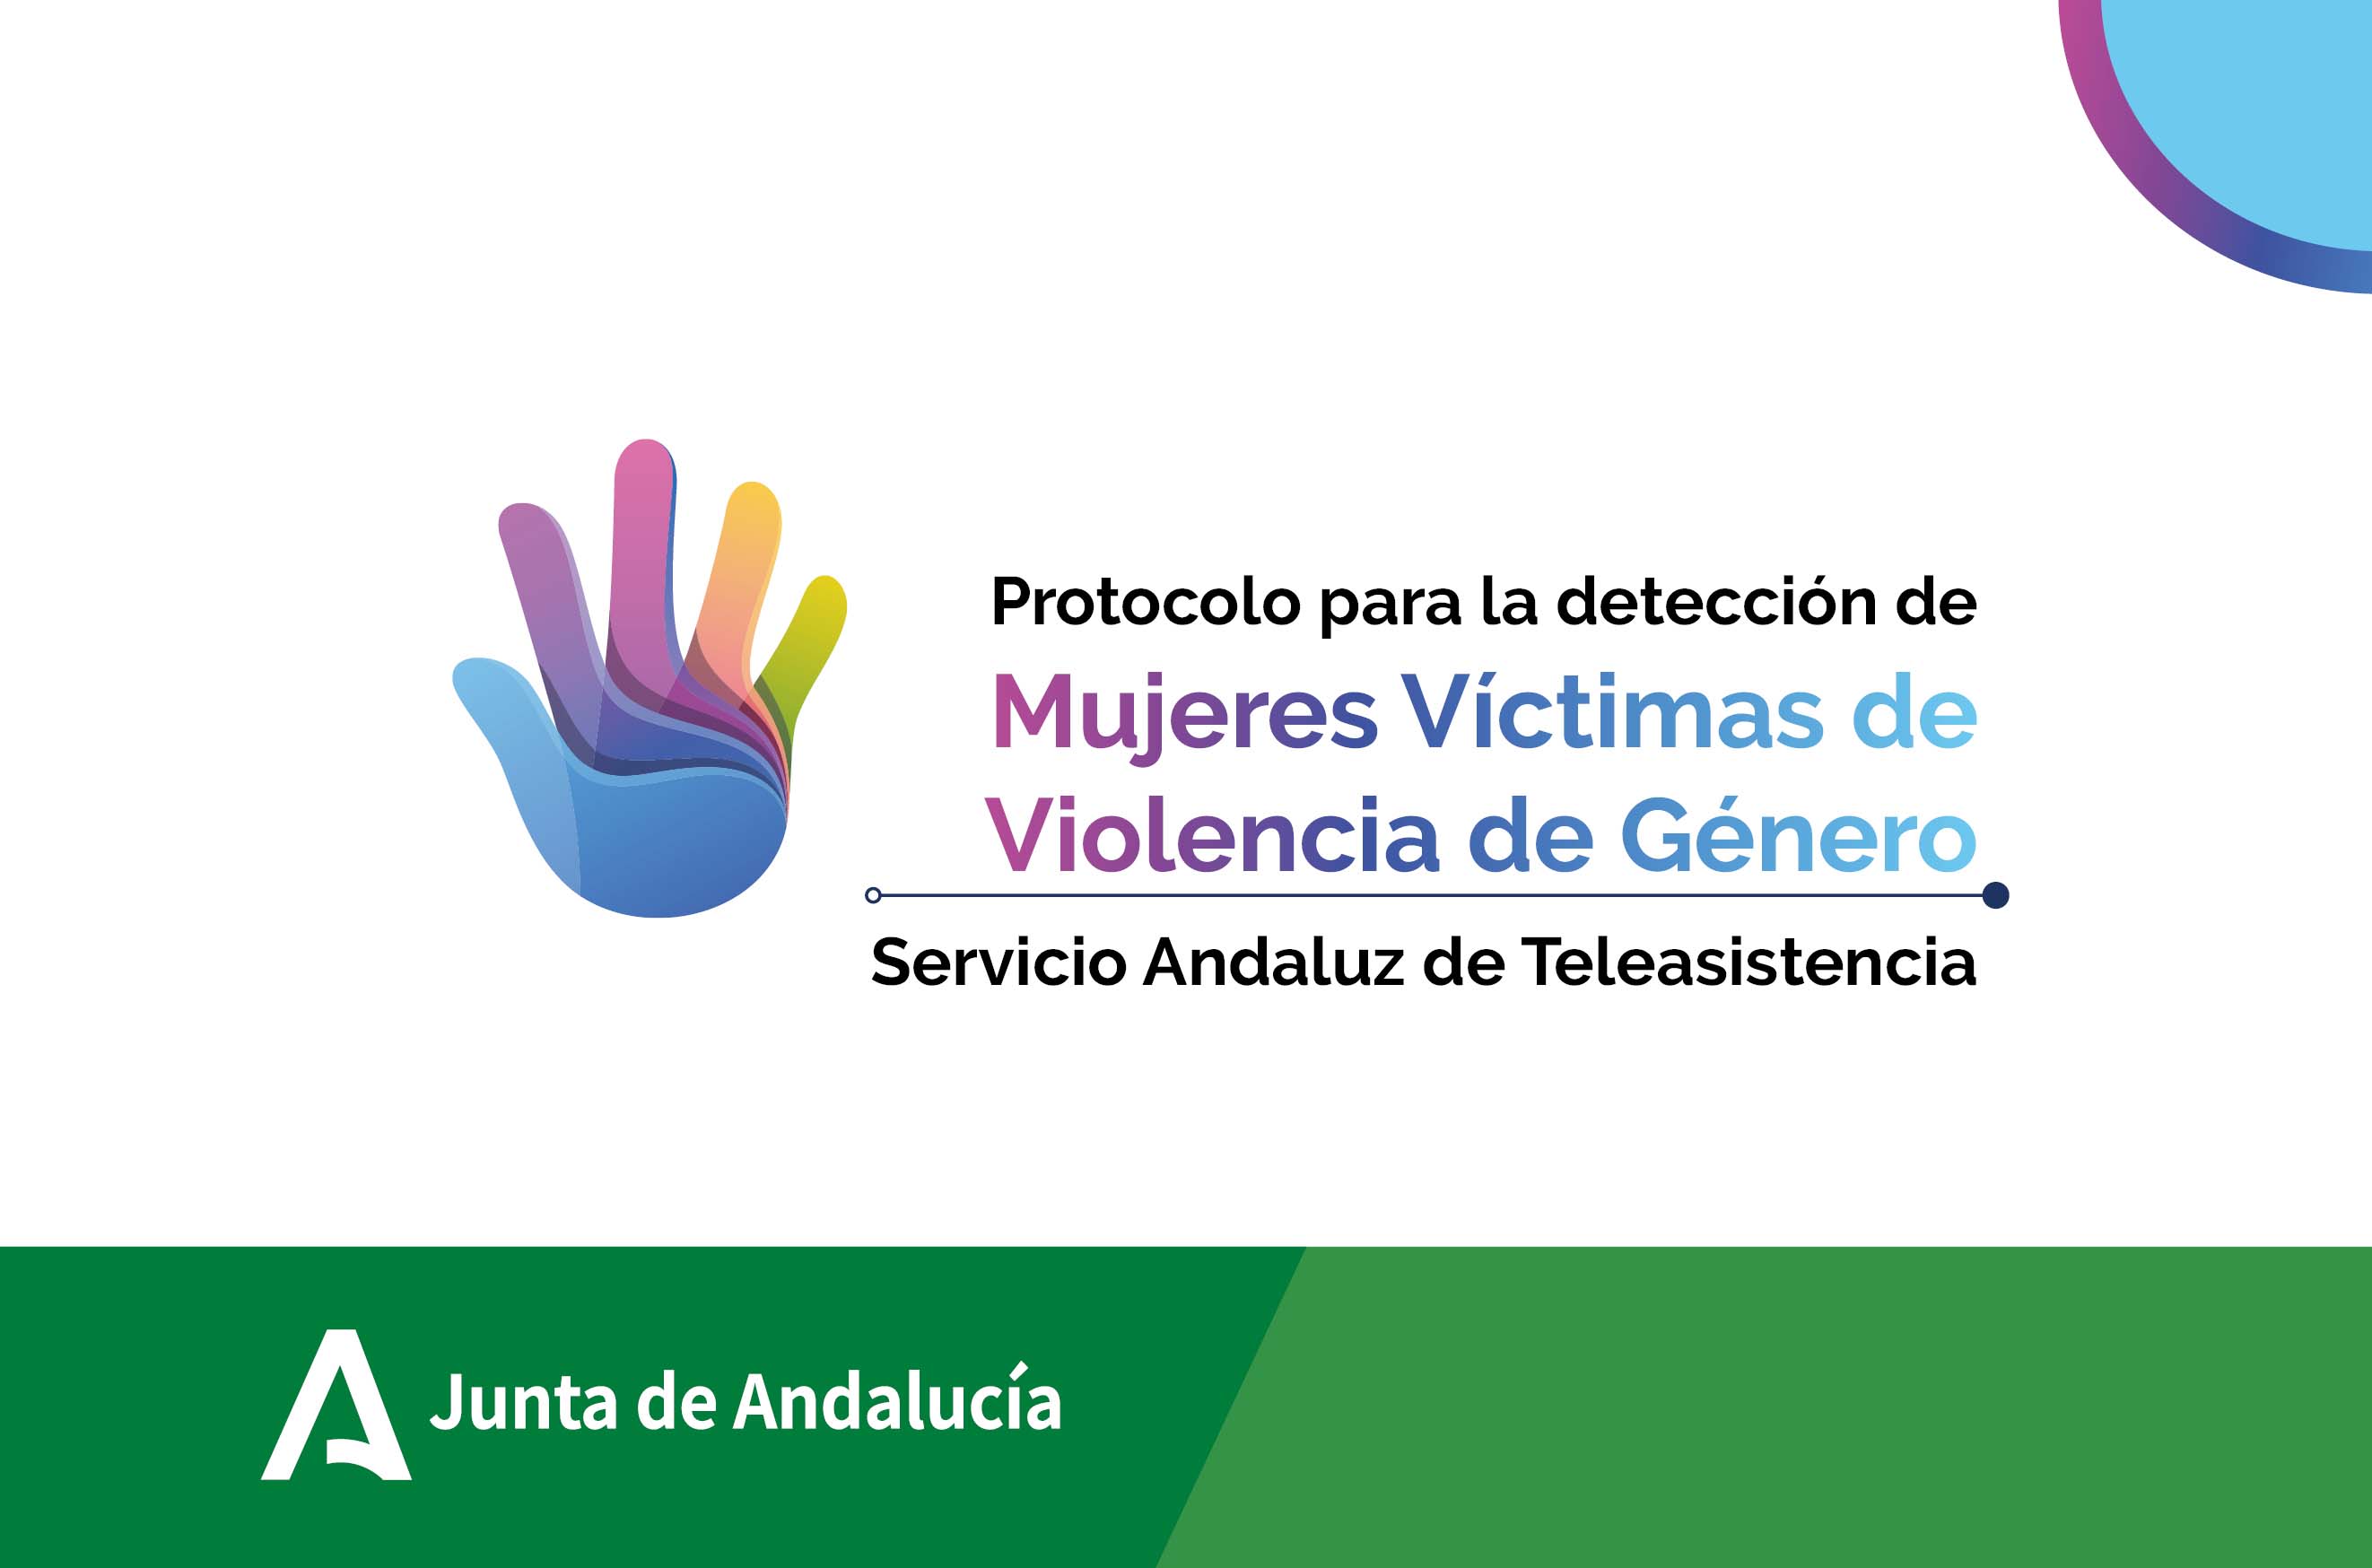 Protocolo Teleasistencia para la atención a víctimas de violencia de género